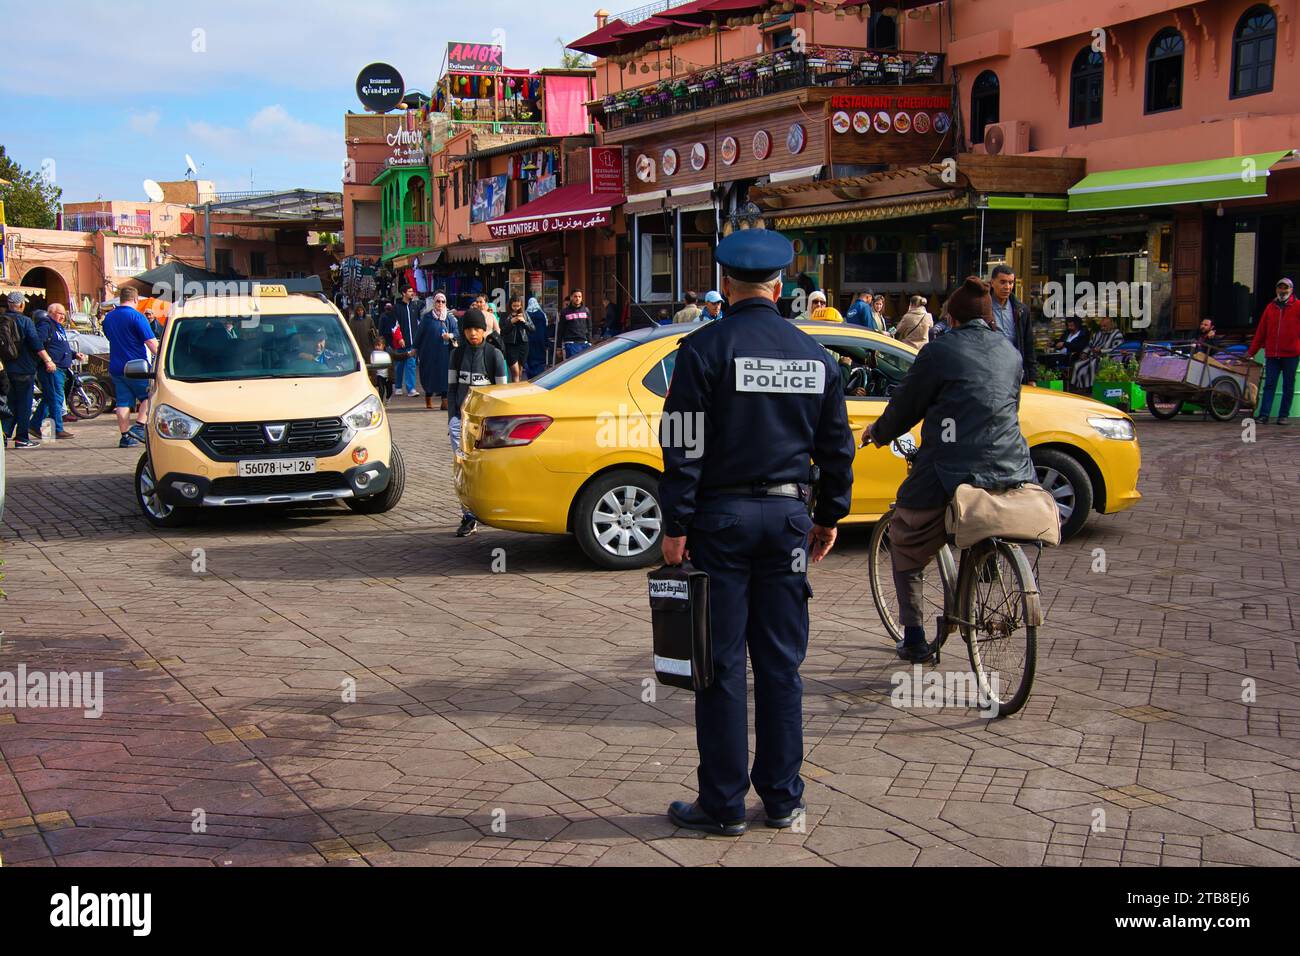 La vie dans les rues de Marrakech, mode de vie à Marrakech, un policier régule la circulation dans les rues de Marrakech Banque D'Images